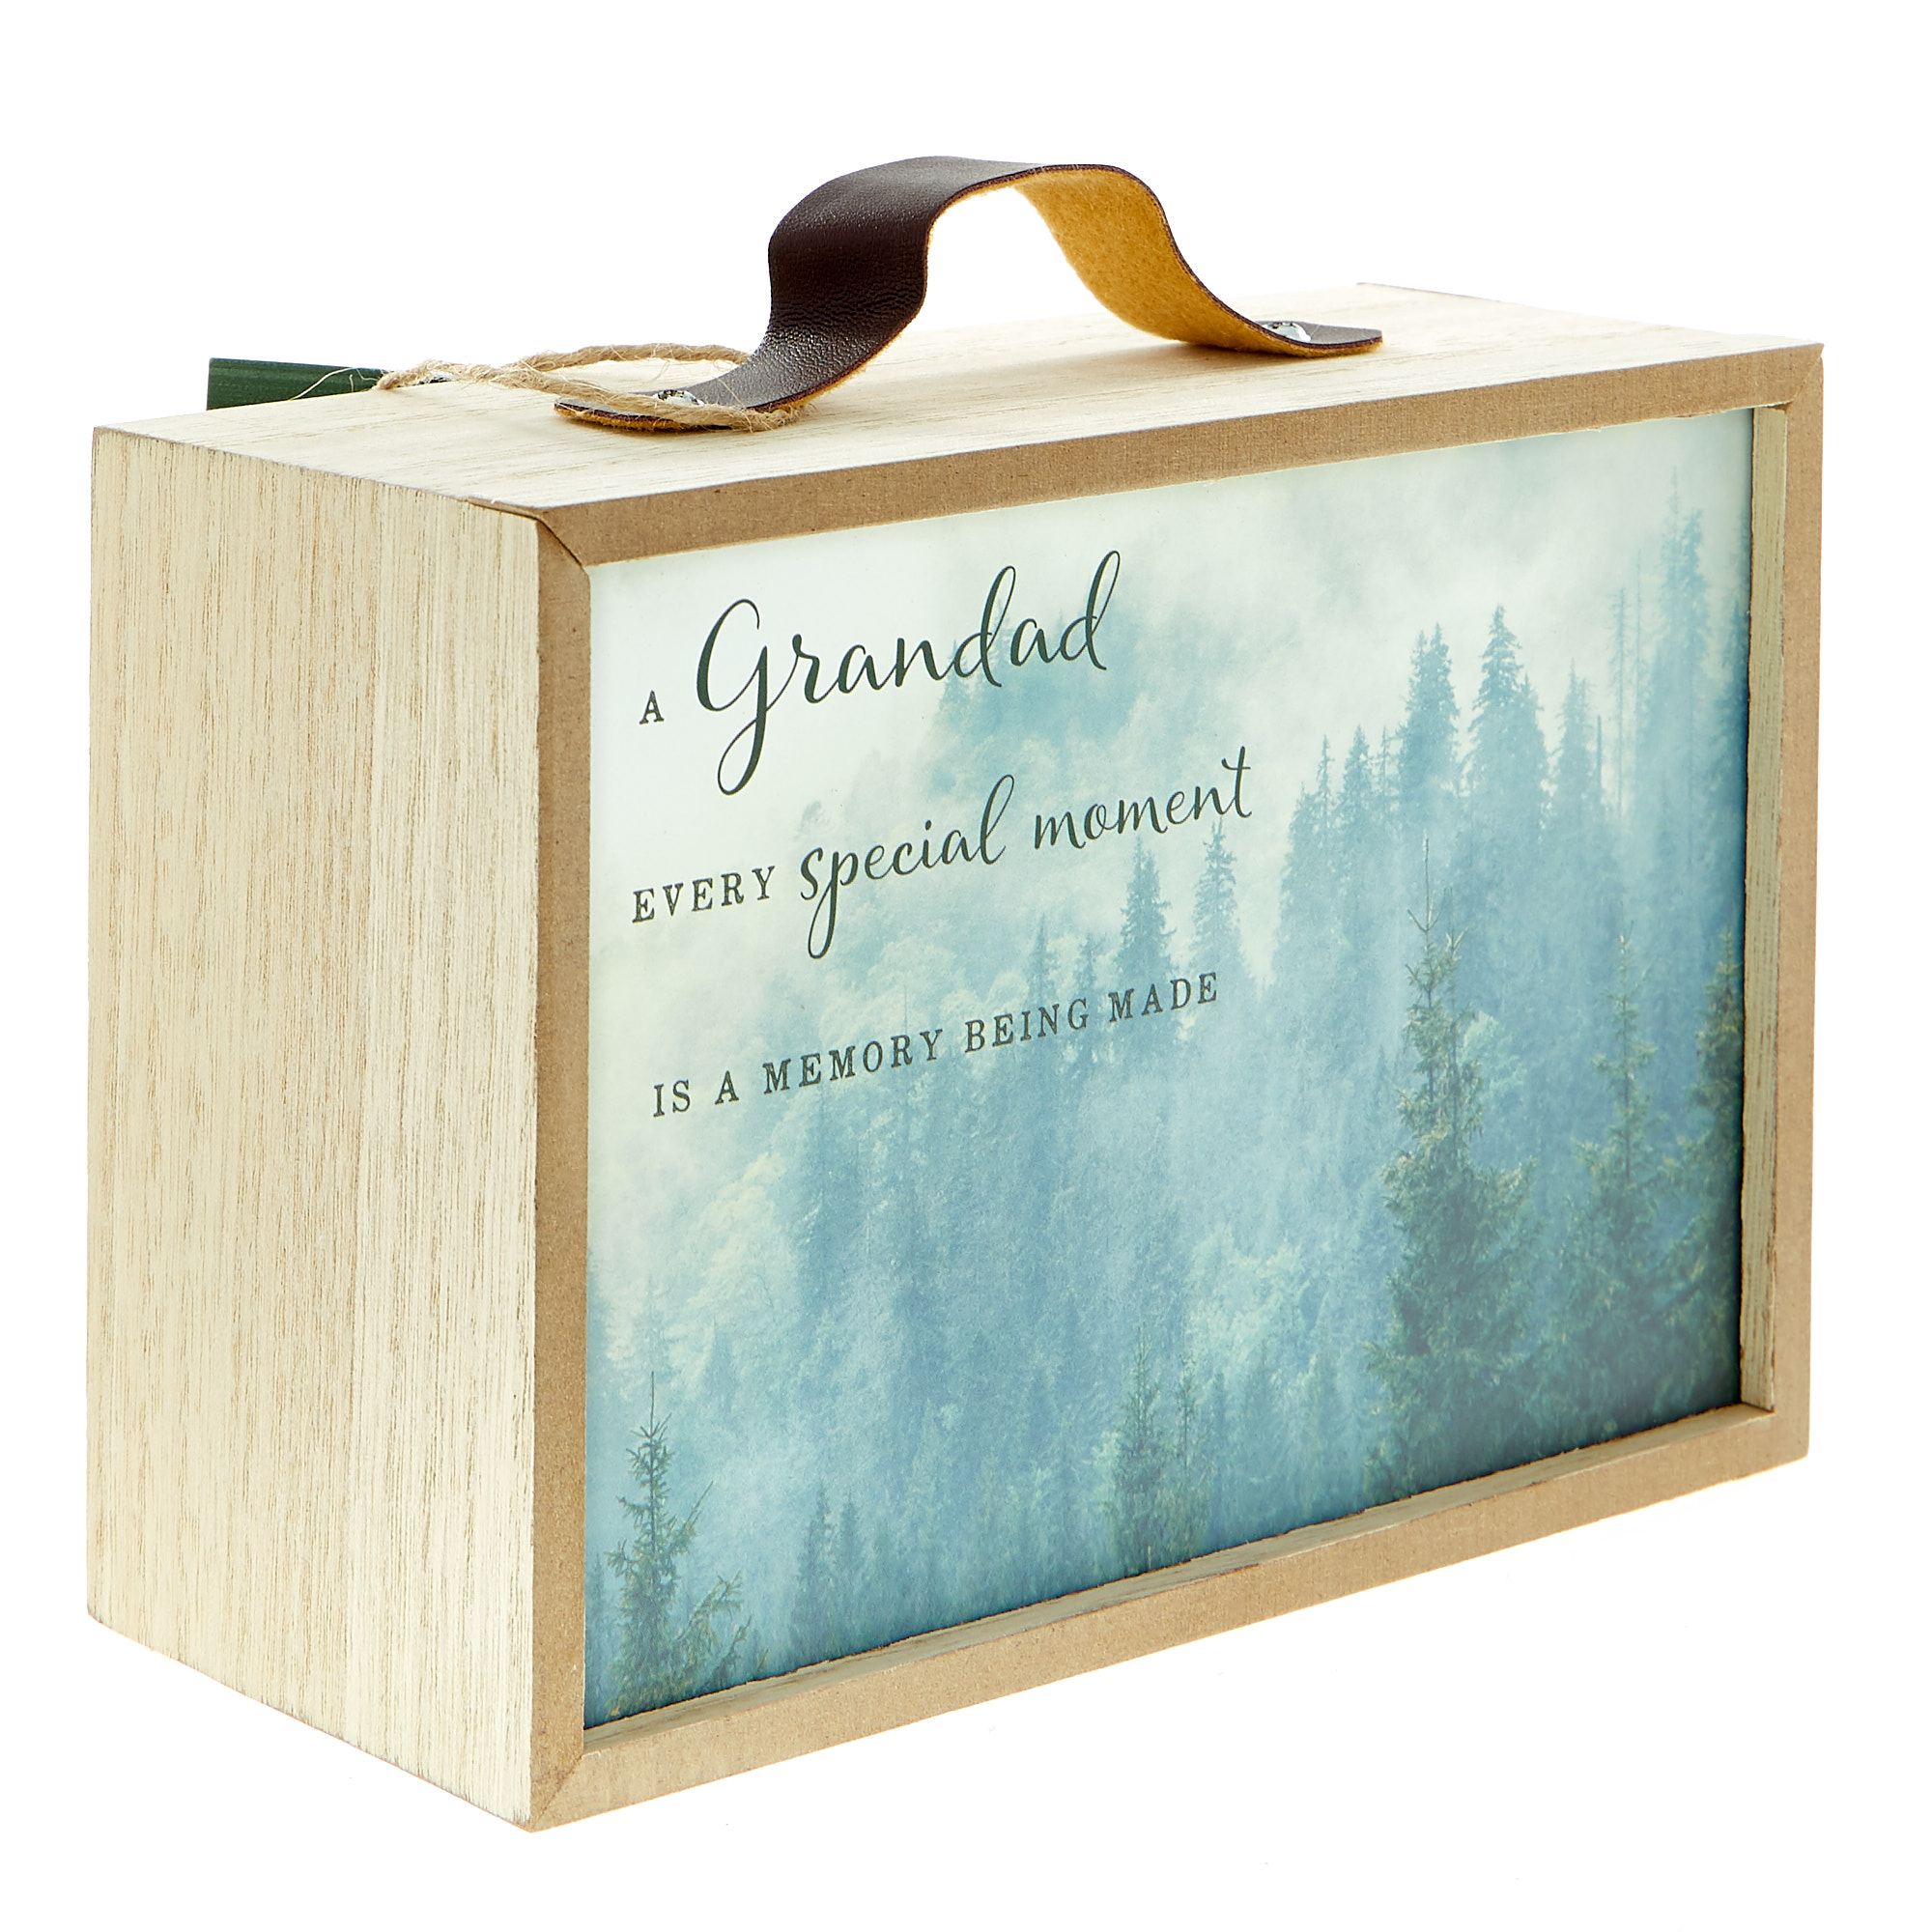 Memory Box For Grandad